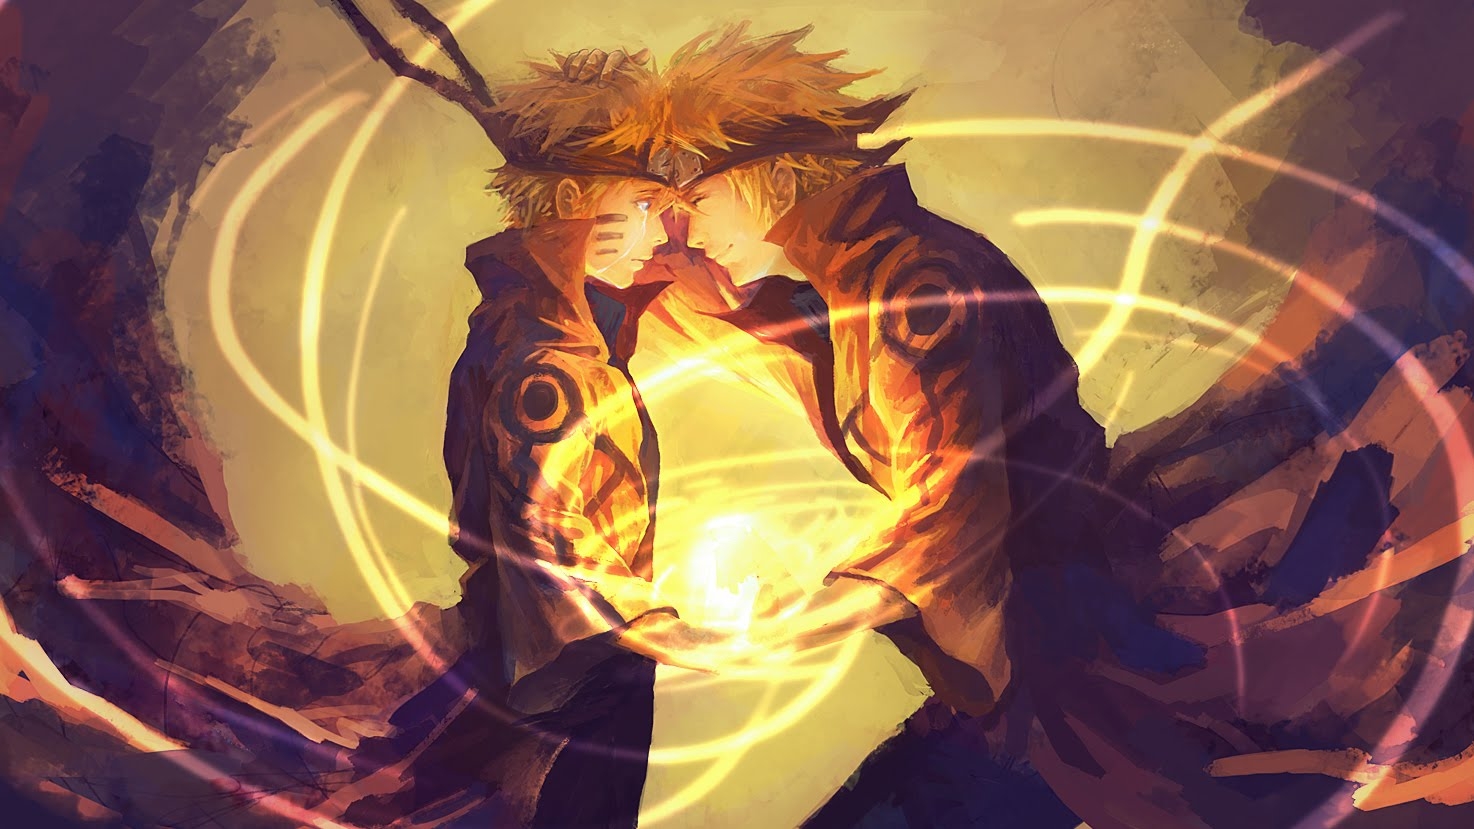 Naruto and his father Minato